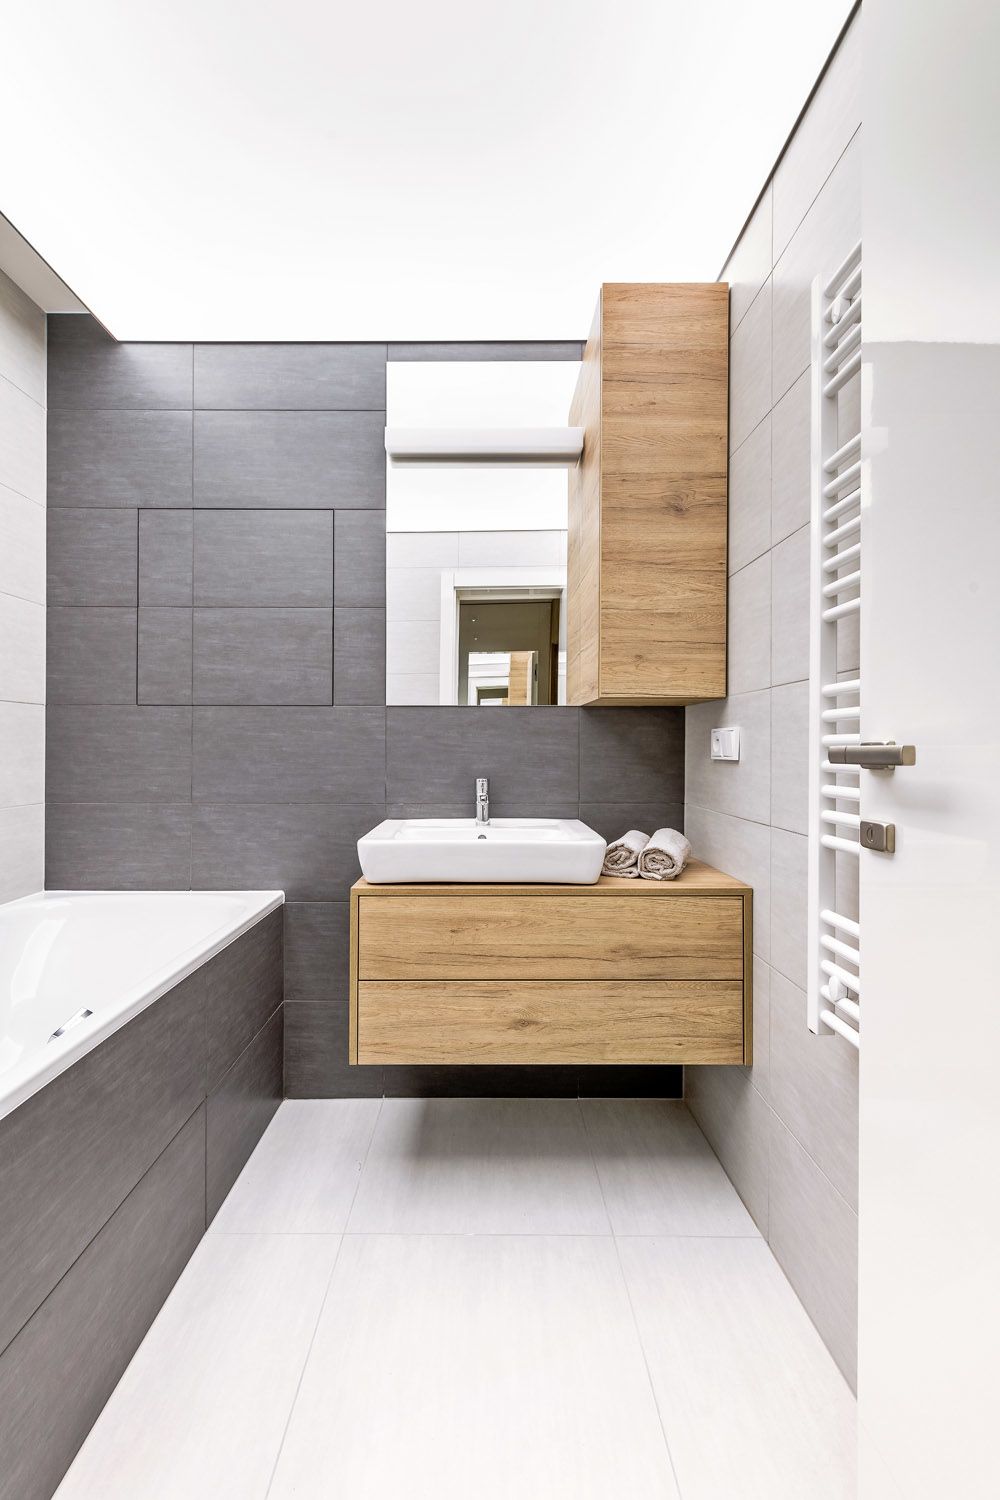 Architekt i investor vyzdvihují jedno rafinované řešení v rámci koupelny, jde o celoplošné osvícení stropu (Vecta), které bylo náročnější co do provedení. Velkoformátový obklad v koupelně v zemité barvě doplňuje dýhovaný koupelnový nábytek na míru.